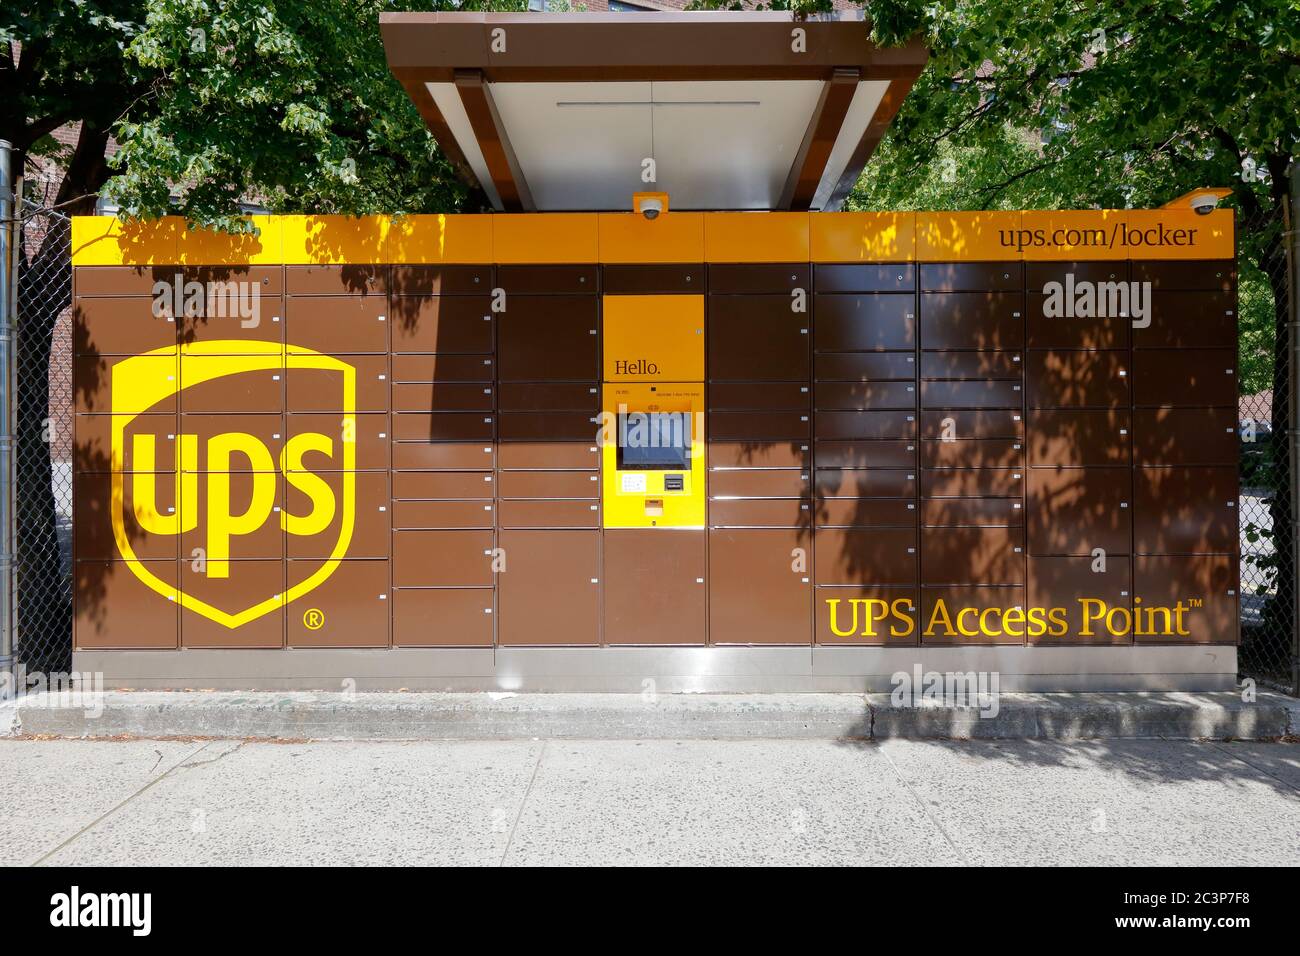 Ein an der Bordwand liegertes UPS Access Point Paketfach in Brooklyn, New York, für die sichere, automatisierte und kontaktlose Zustellung von Paketen. Stockfoto